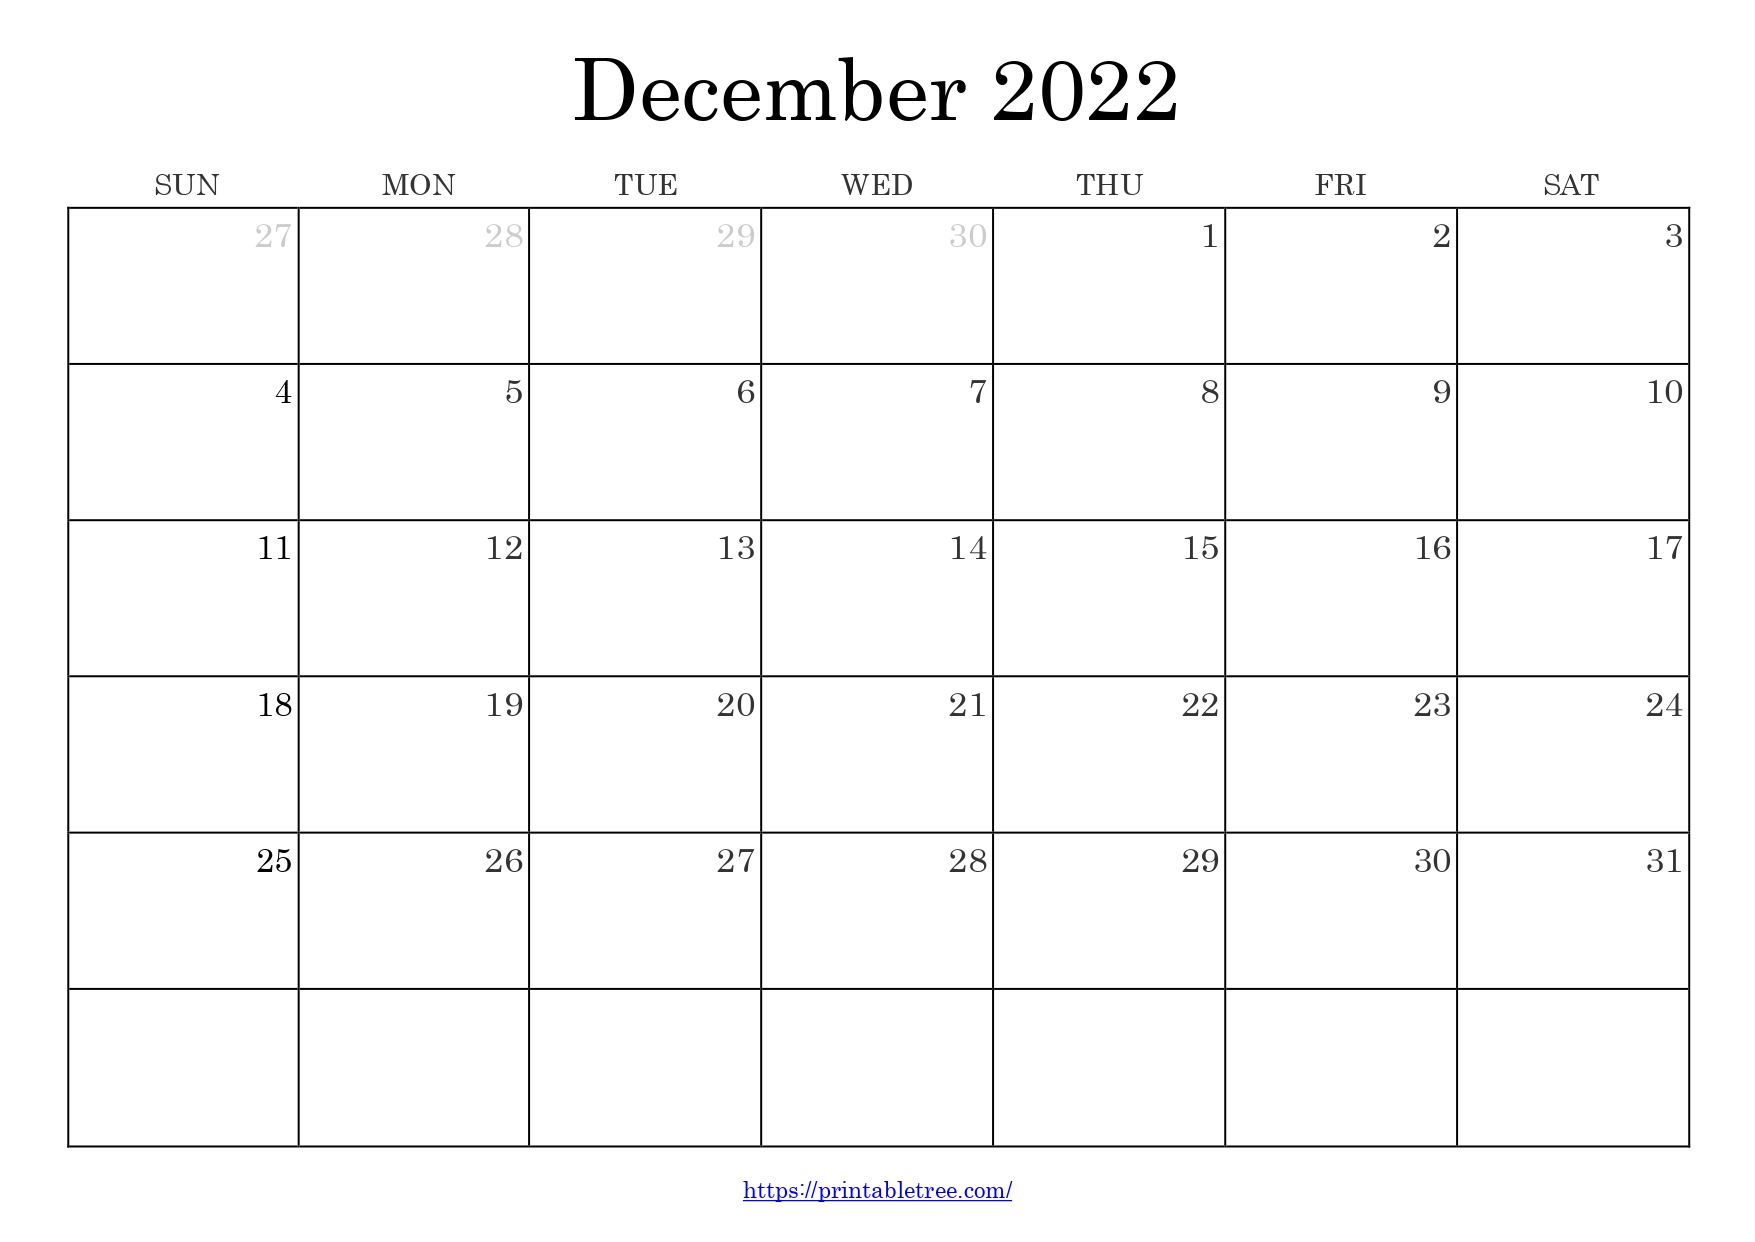 December 2022 Calendar Template Images